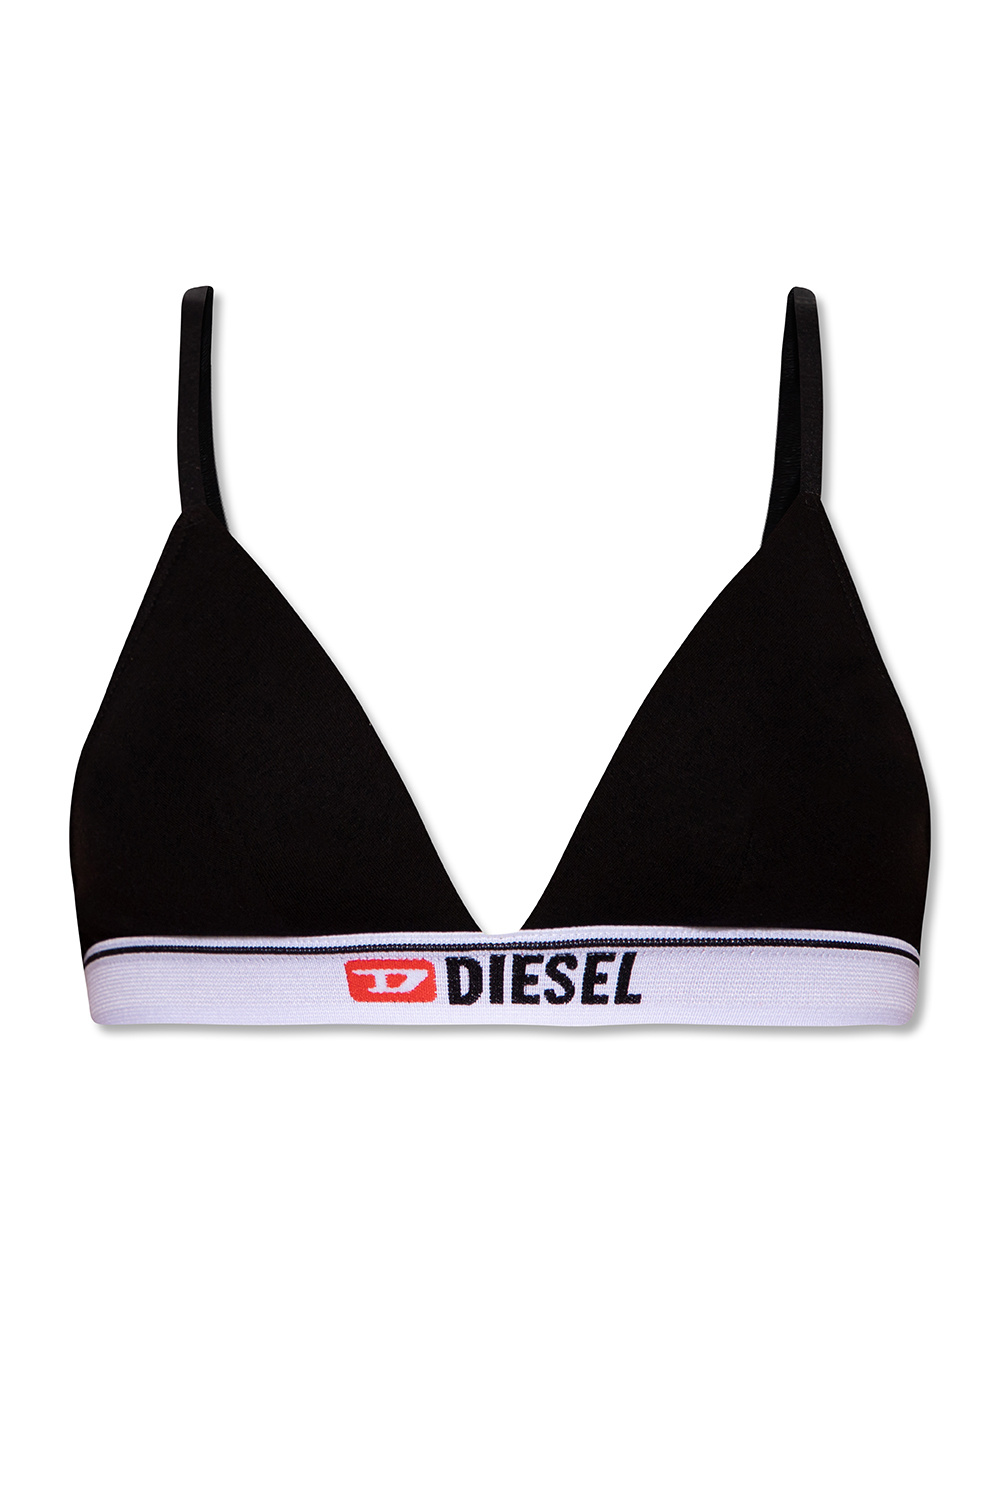 Diesel 'Lizzys' bra